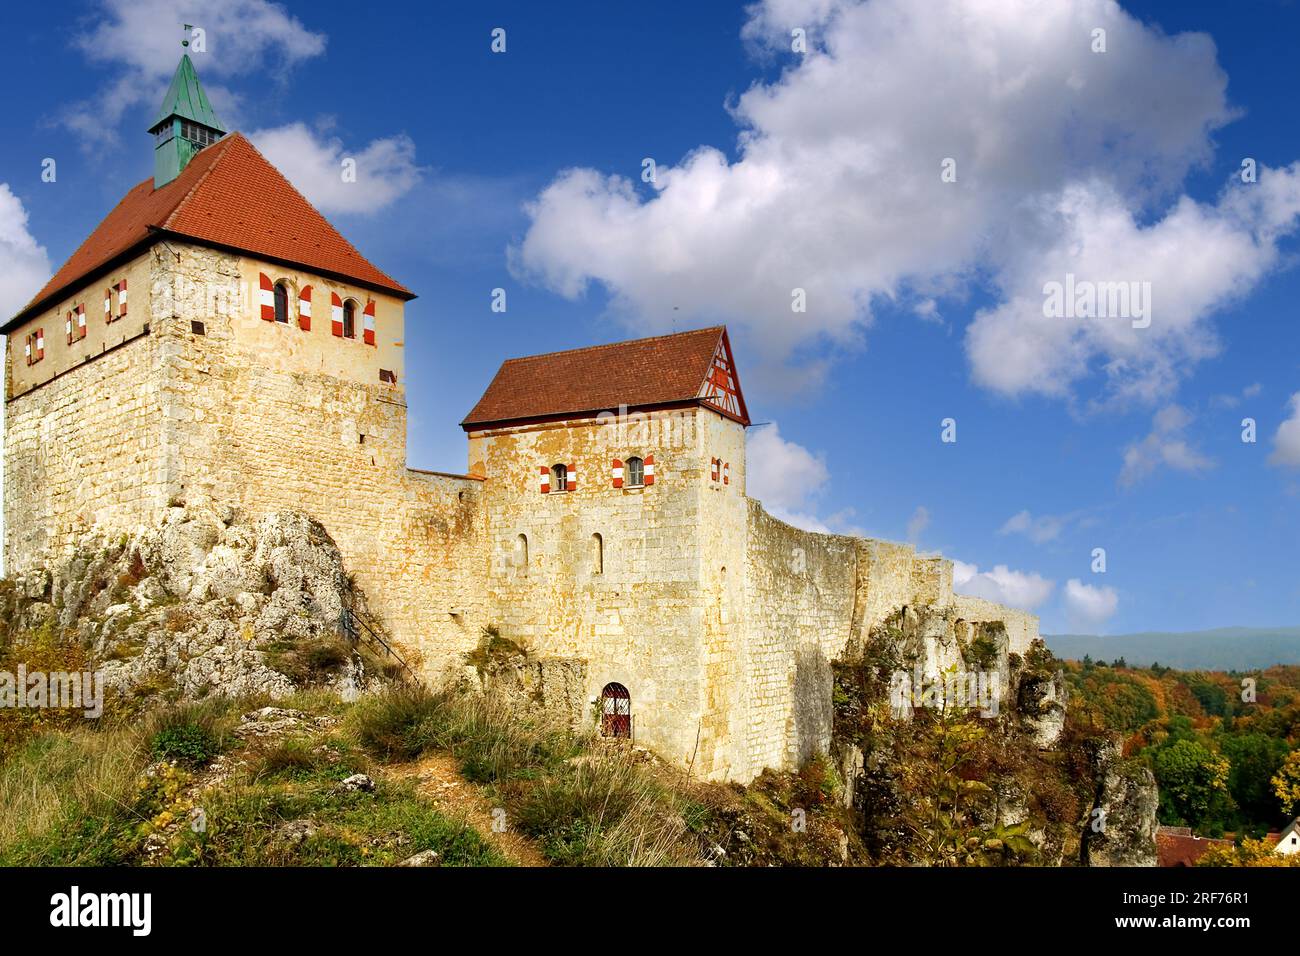 Blick auf die Burg Hohenstein in Bayern, Deutschland. Stock Photo